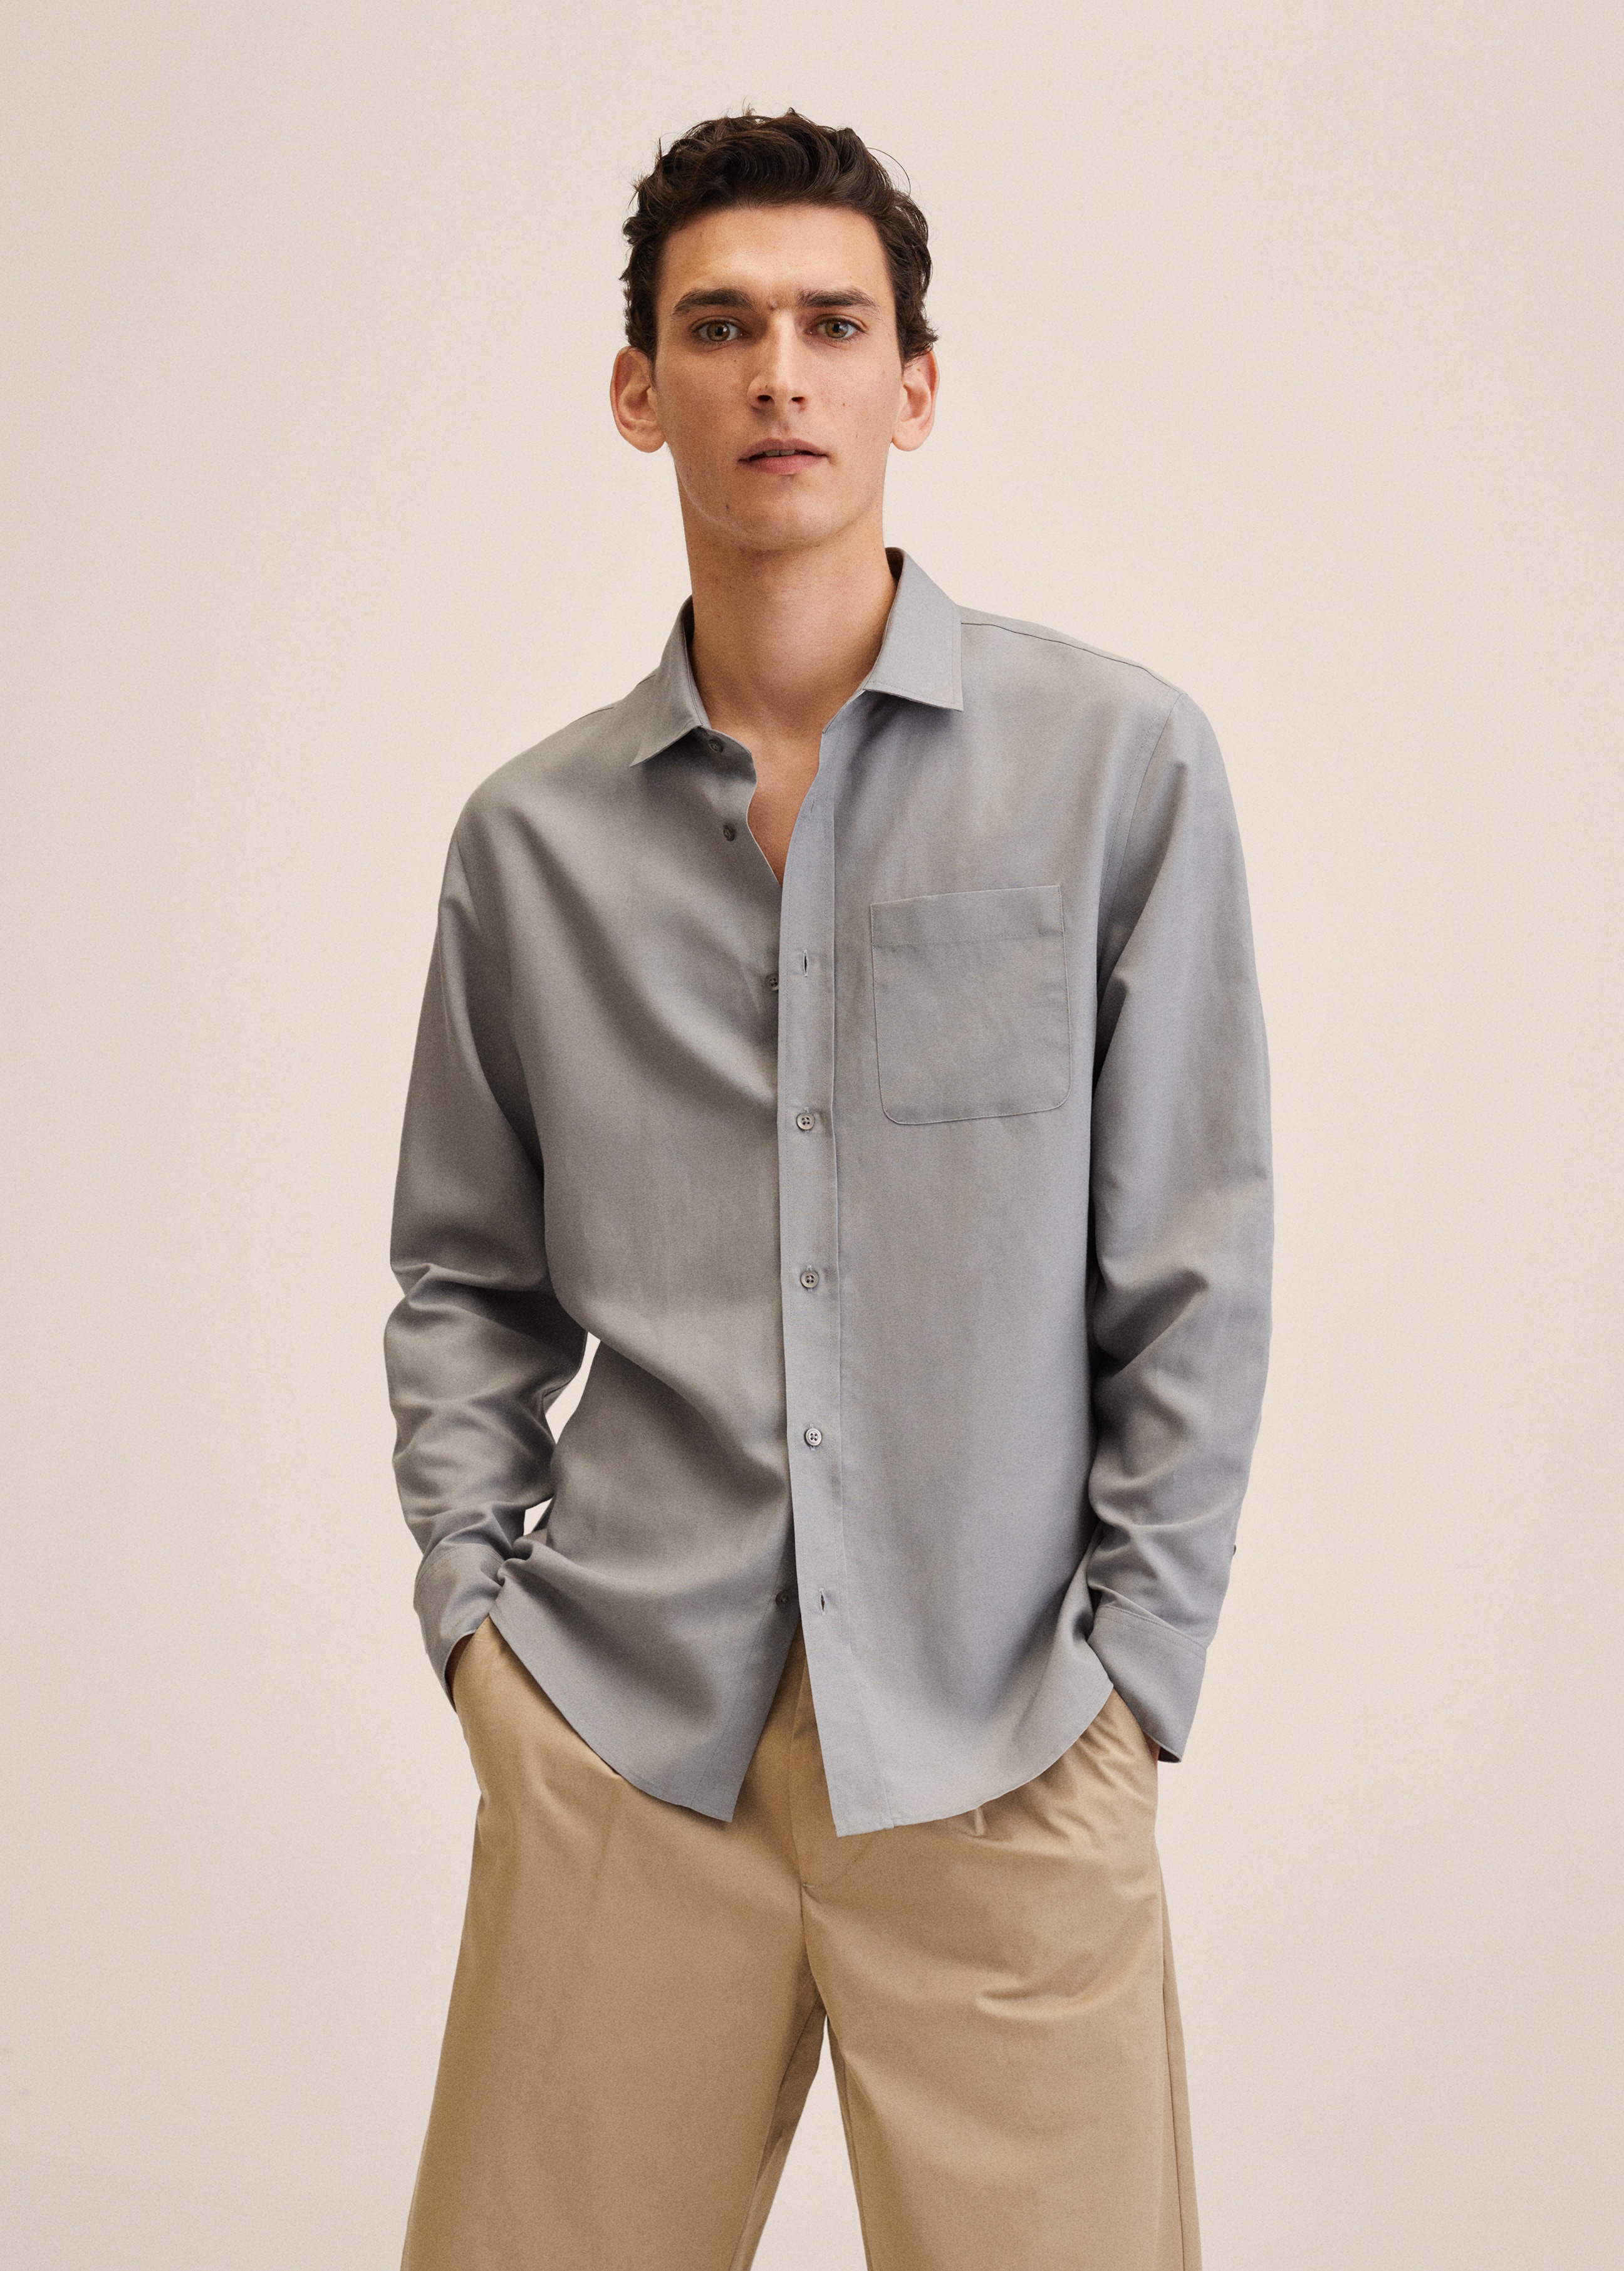 Linen lyocell shirt with pocket - Medium plane